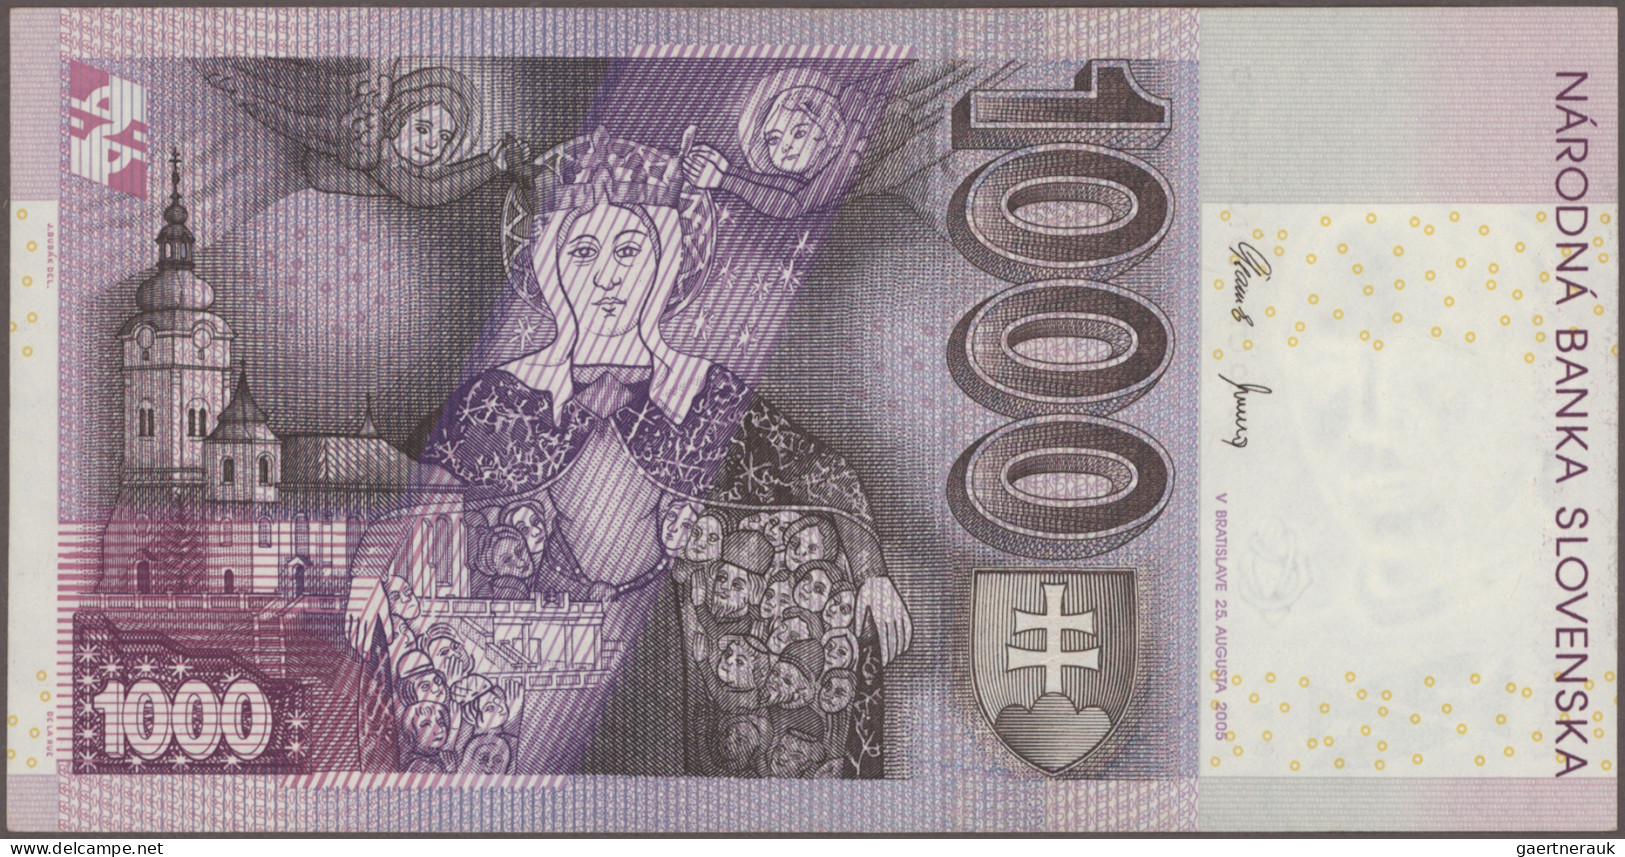 Slovakia: Slovakia Republic And Slovakia National Bank, Lot With 10 Banknotes, S - Slovaquie